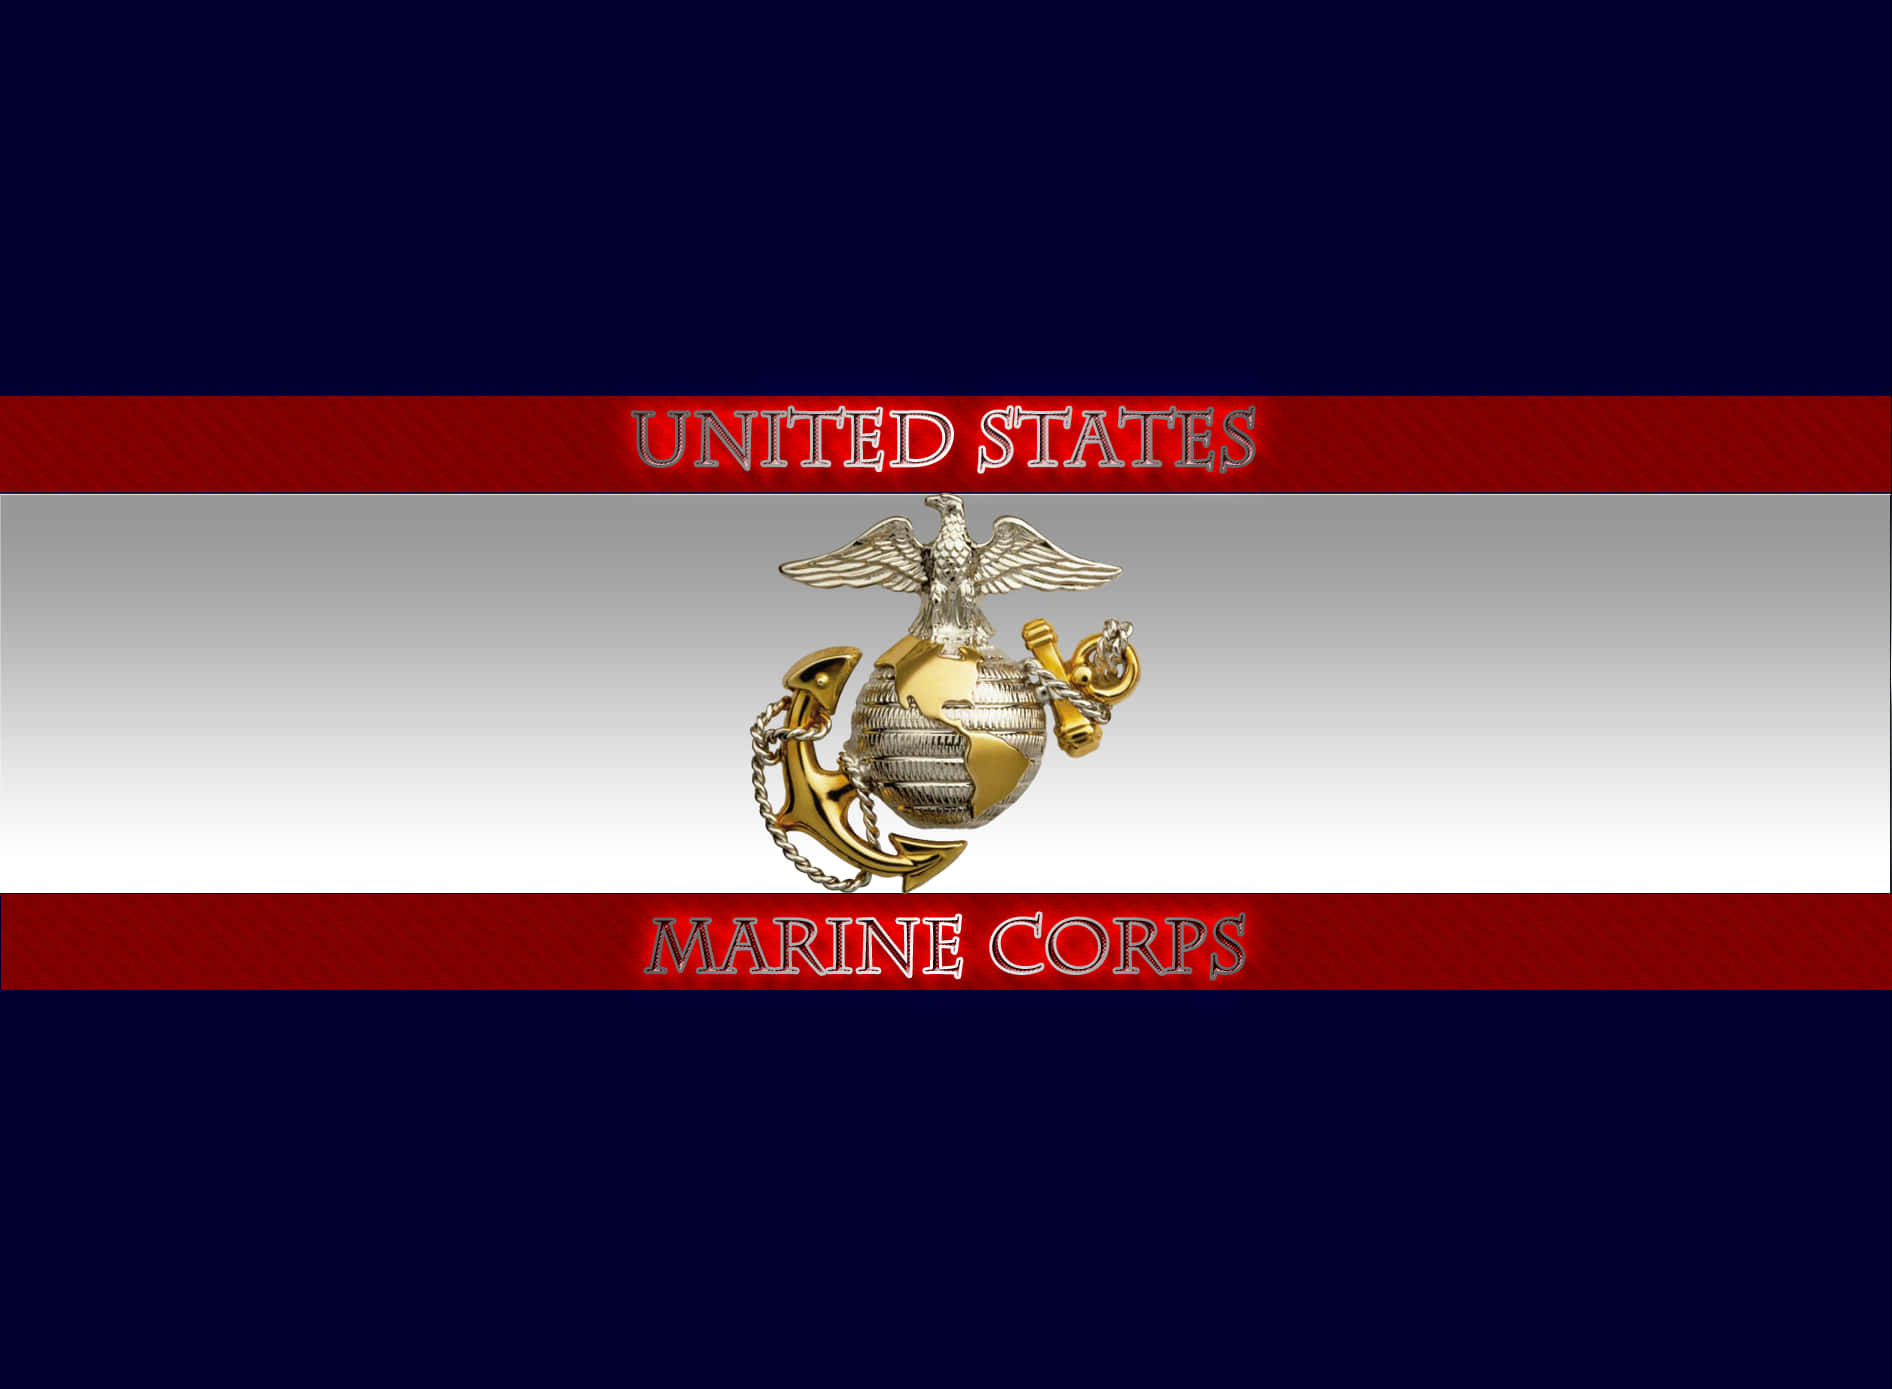 Ære de modige forsvarere af vores nation, der tjenere i United States Marine Corps. Wallpaper